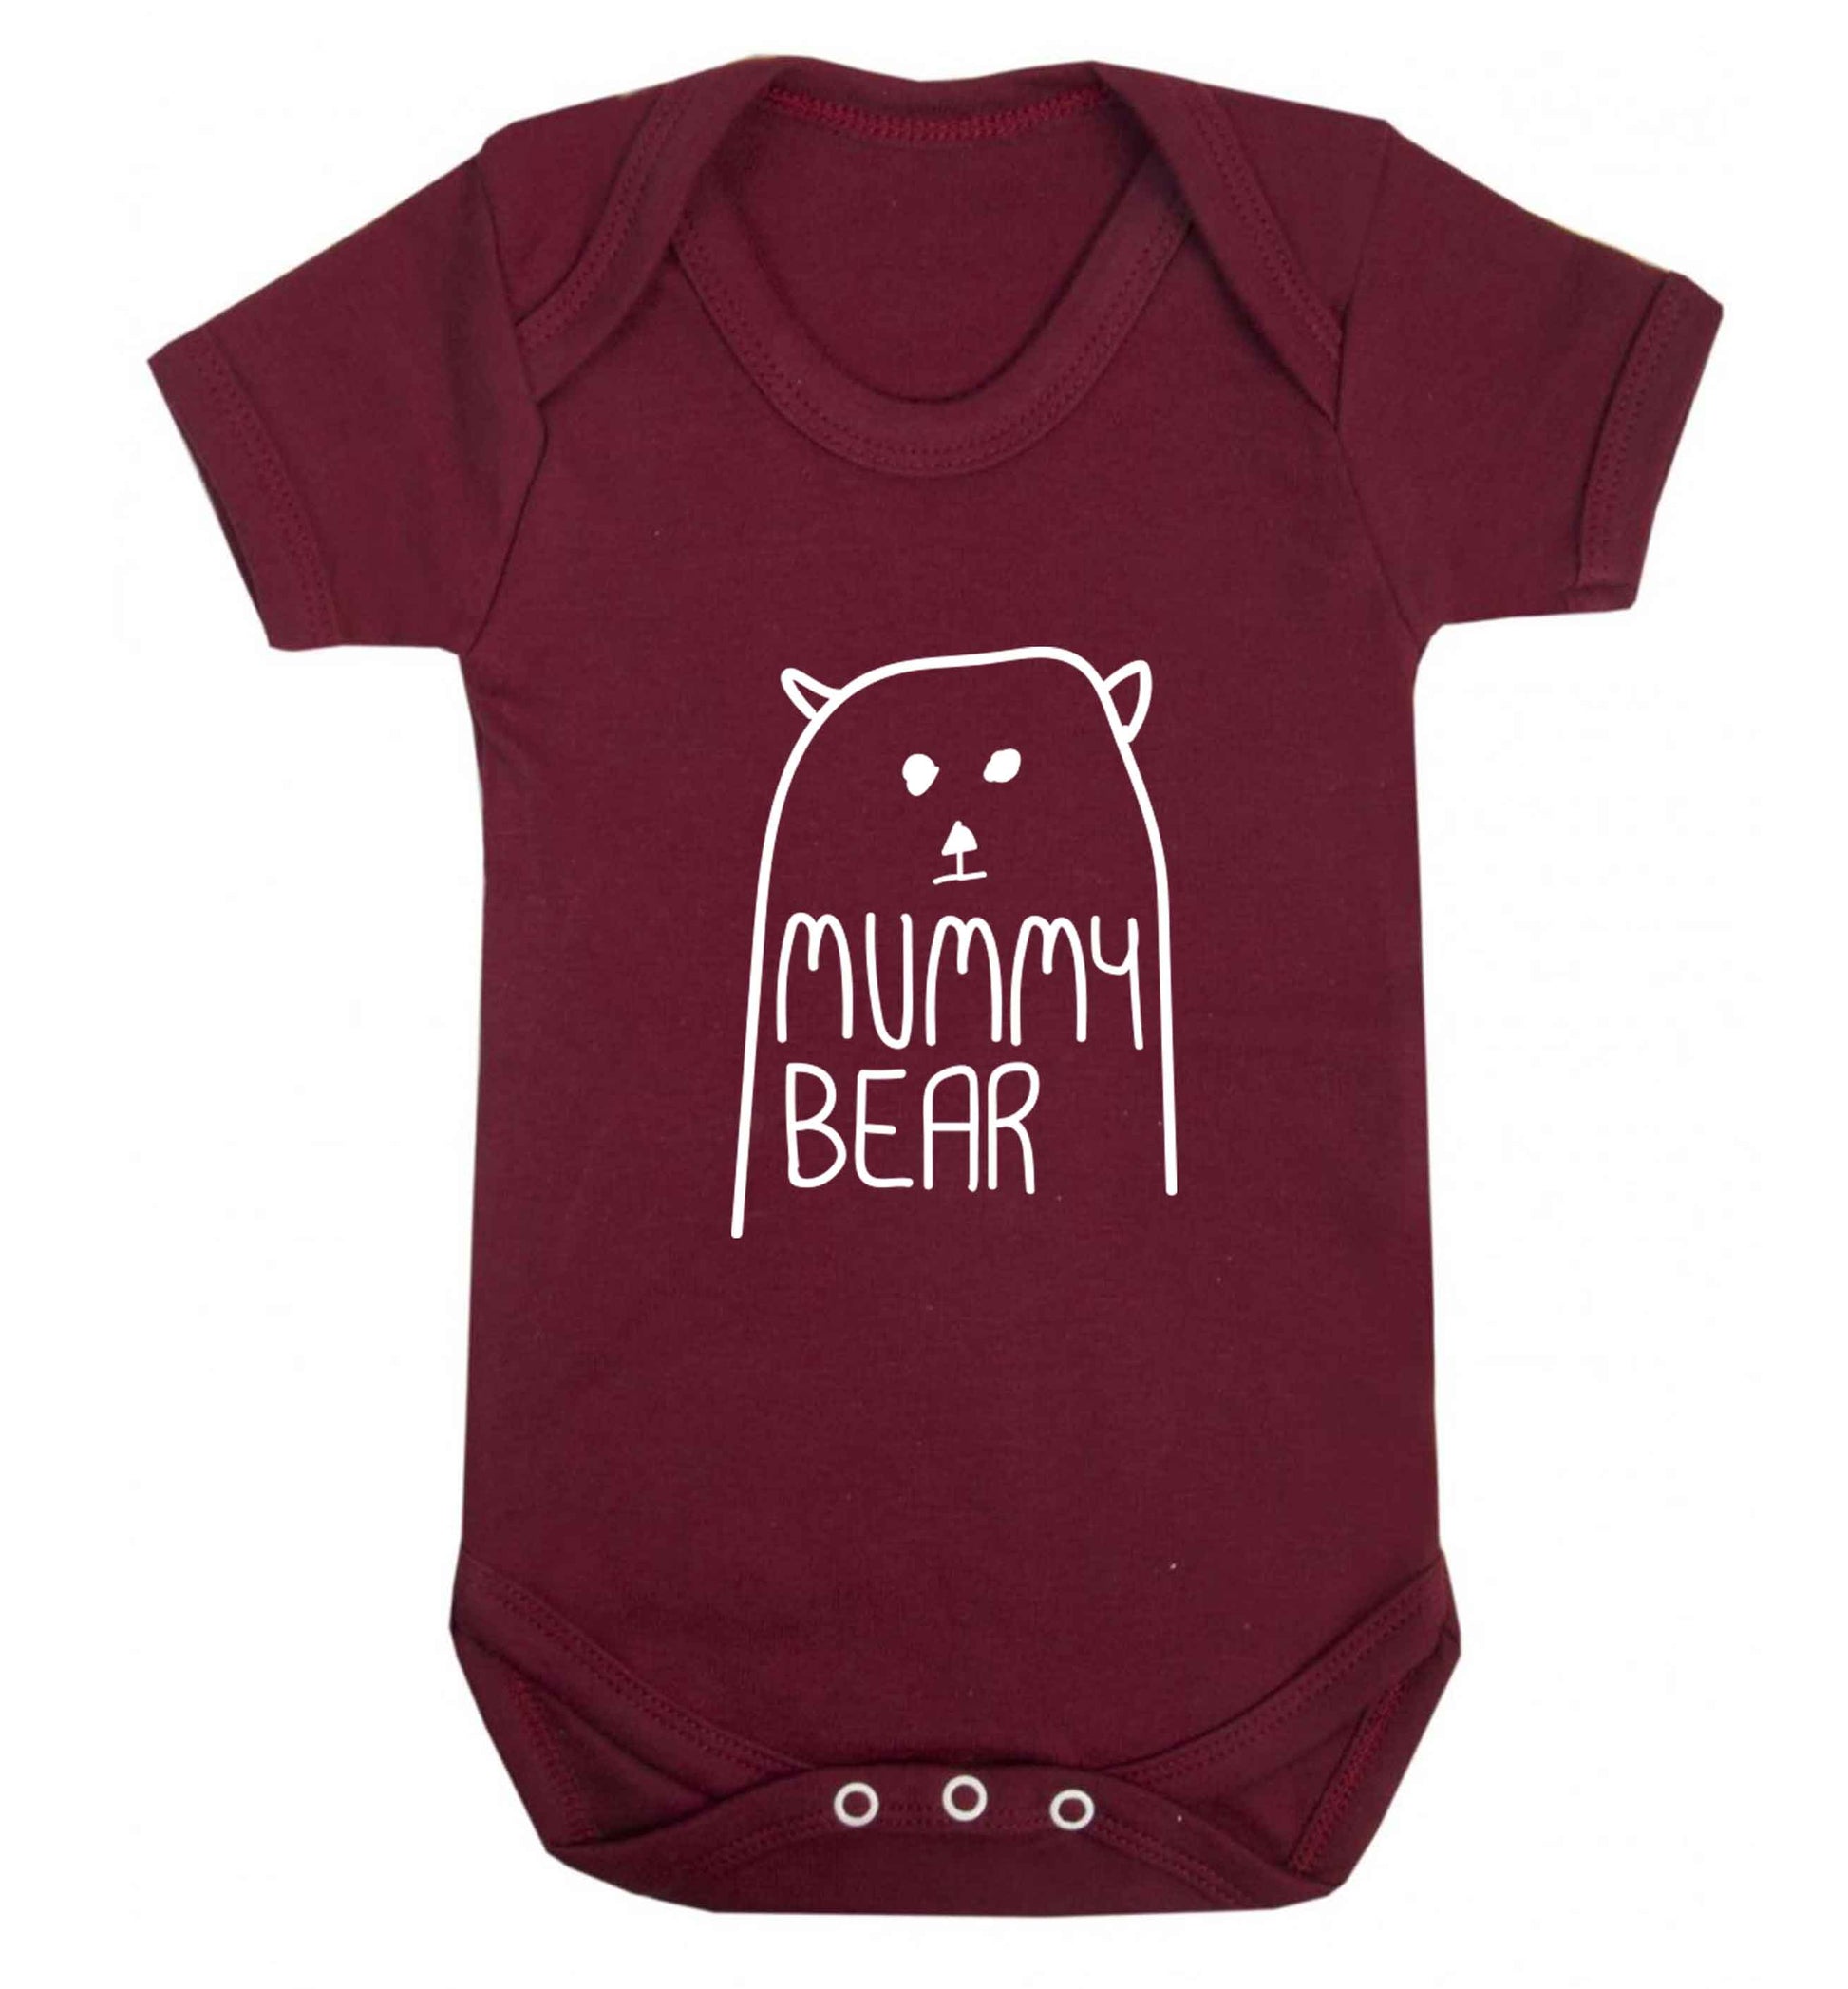 Mummy bear baby vest maroon 18-24 months